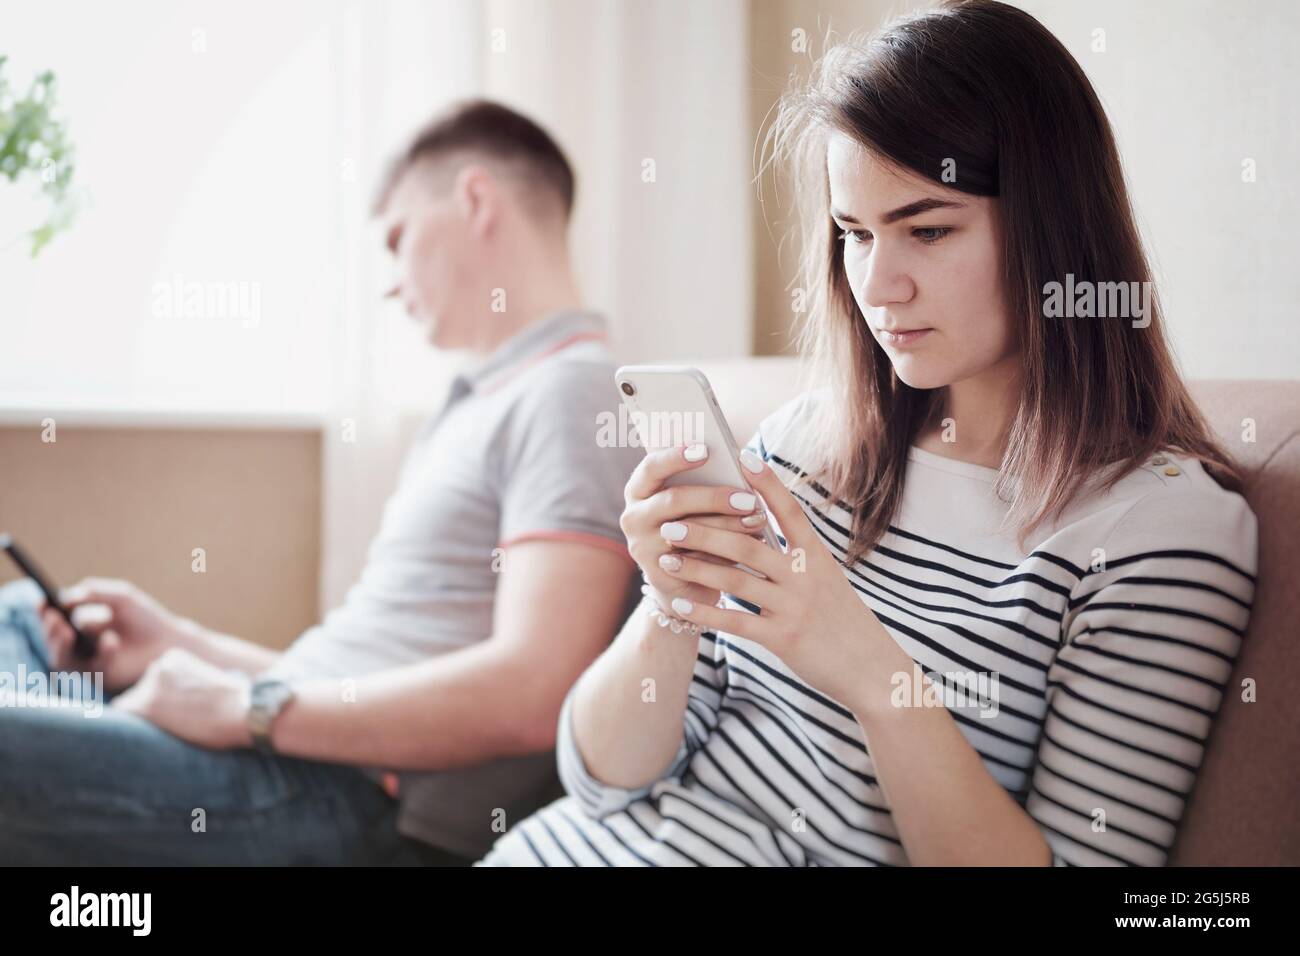 Verärgerte Ehemann und Ehefrau oder Freund und Freundin sitzen auf der Couch und schauen sich das Telefon an - verärgerte junge Menschen ignorieren sich gegenseitig und Stockfoto